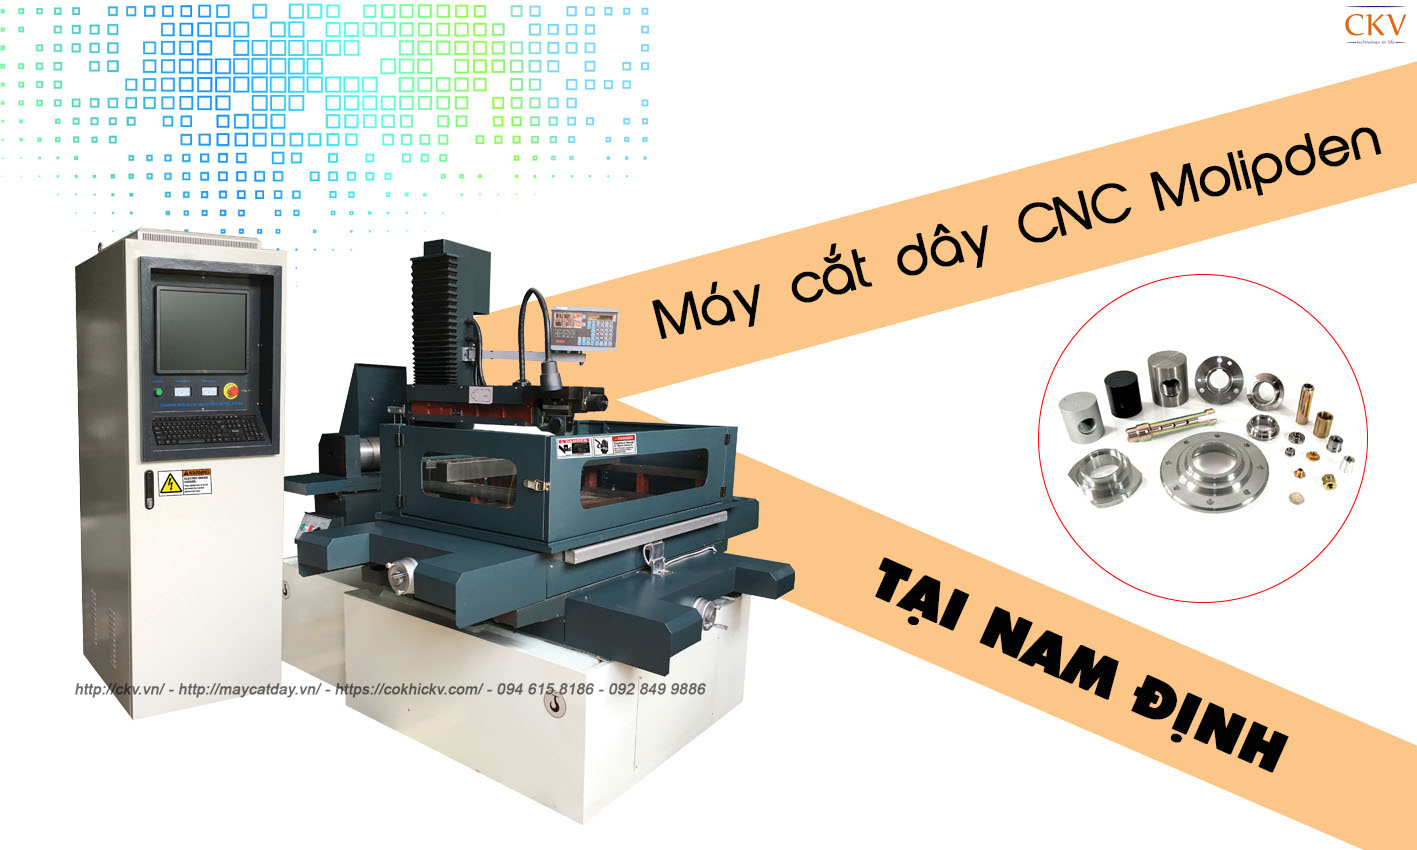 Bán máy cắt dây CNC molypden giá gốc tại Nam Định có bảo hành 12 tháng